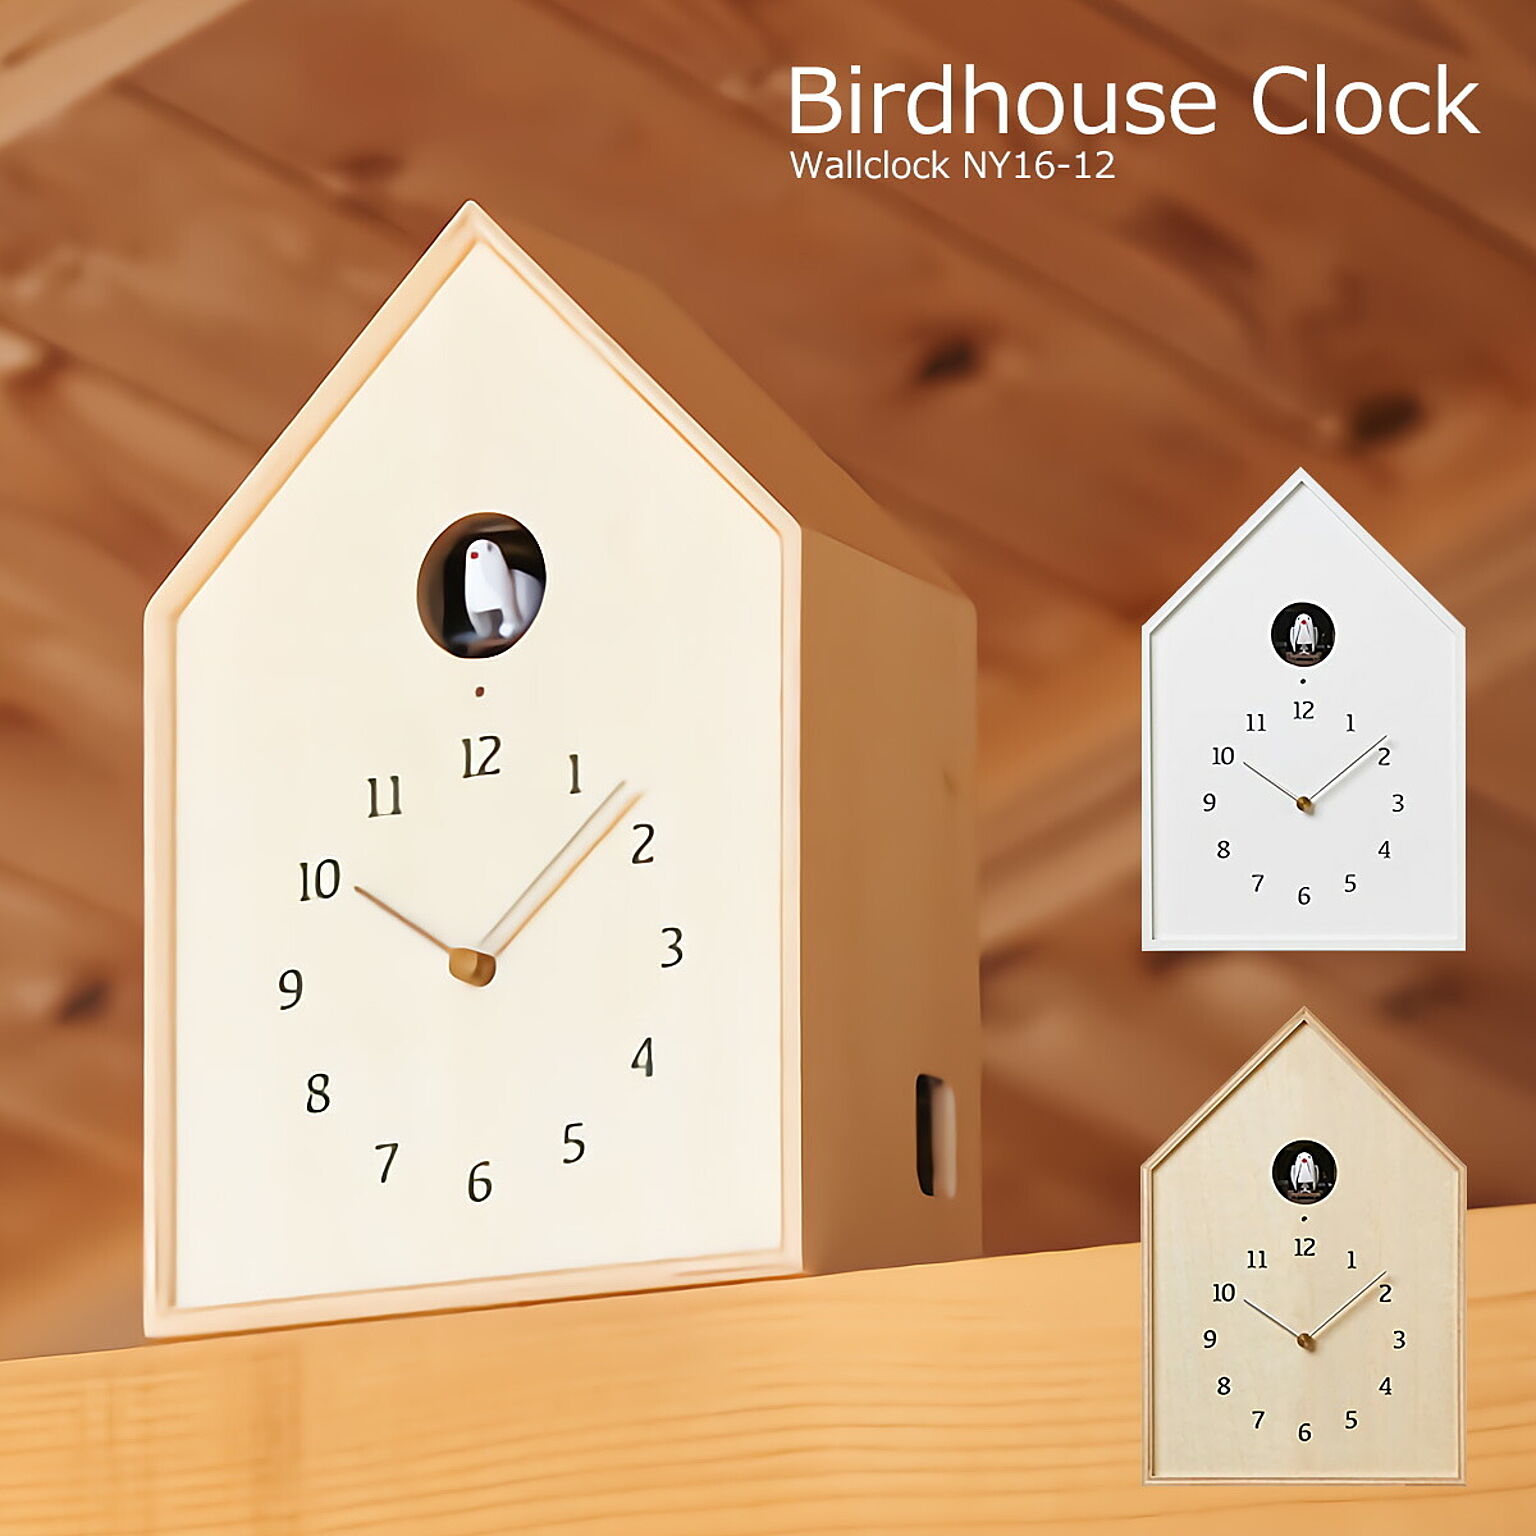 ハト時計 壁掛け時計 おしゃれ 鳩時計 時計 壁掛け 北欧 掛け時計 カッコー時計 Birdhouse Clock バードハウスクロック NY16-12 木製 ウォールクロック ダイニング オシャレ 